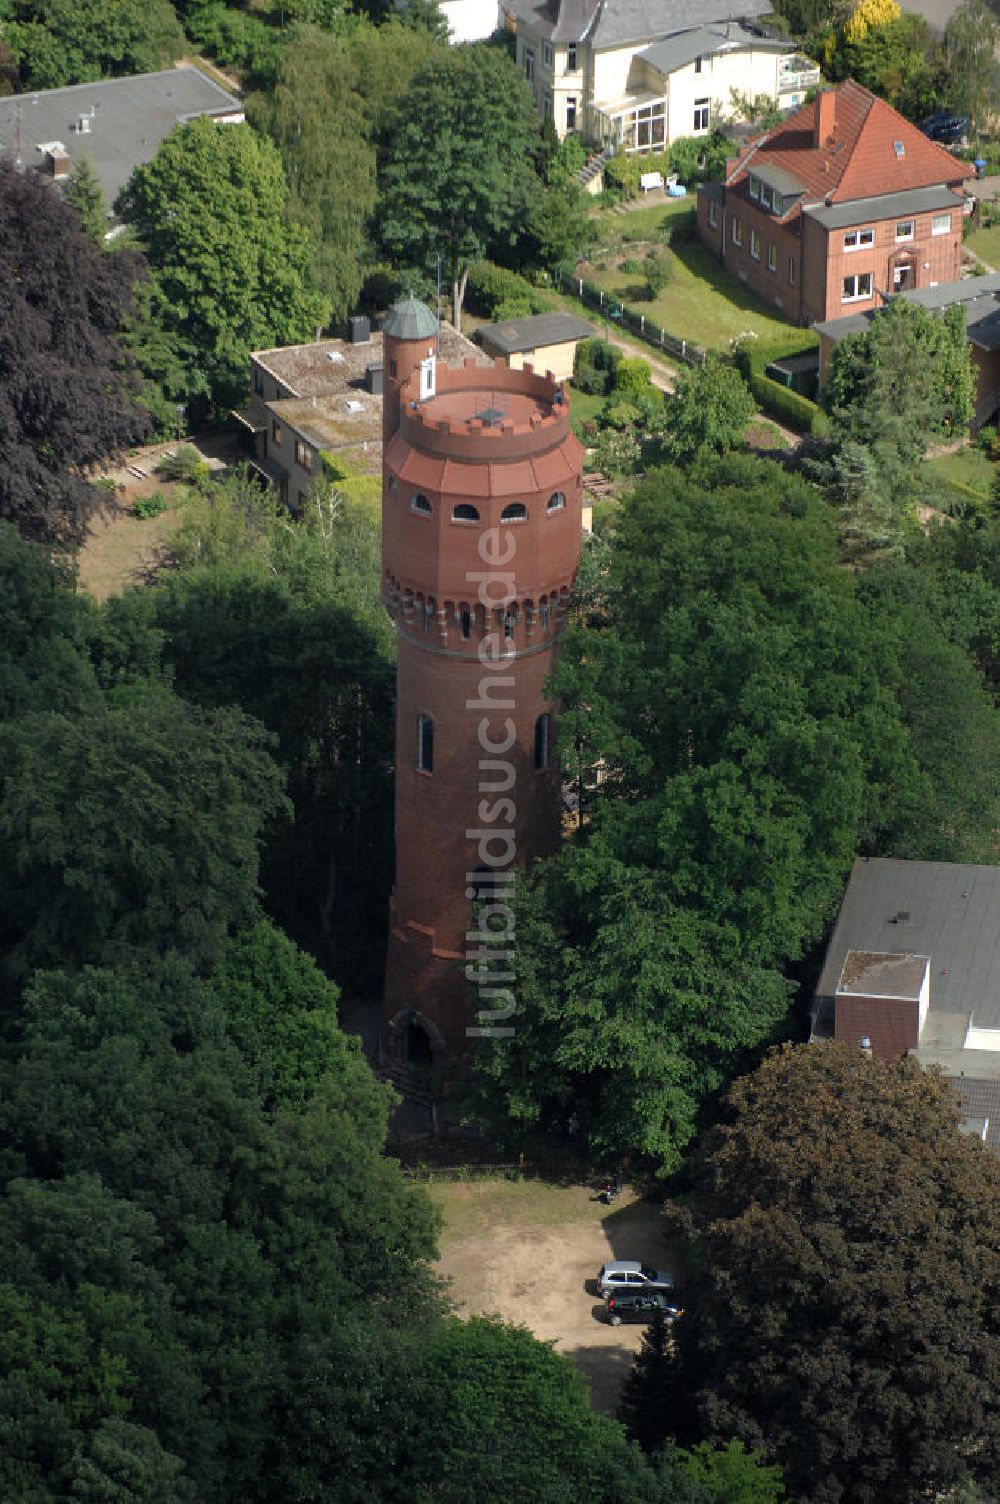 Mölln aus der Vogelperspektive: Historischer Wasserturm von Mölln